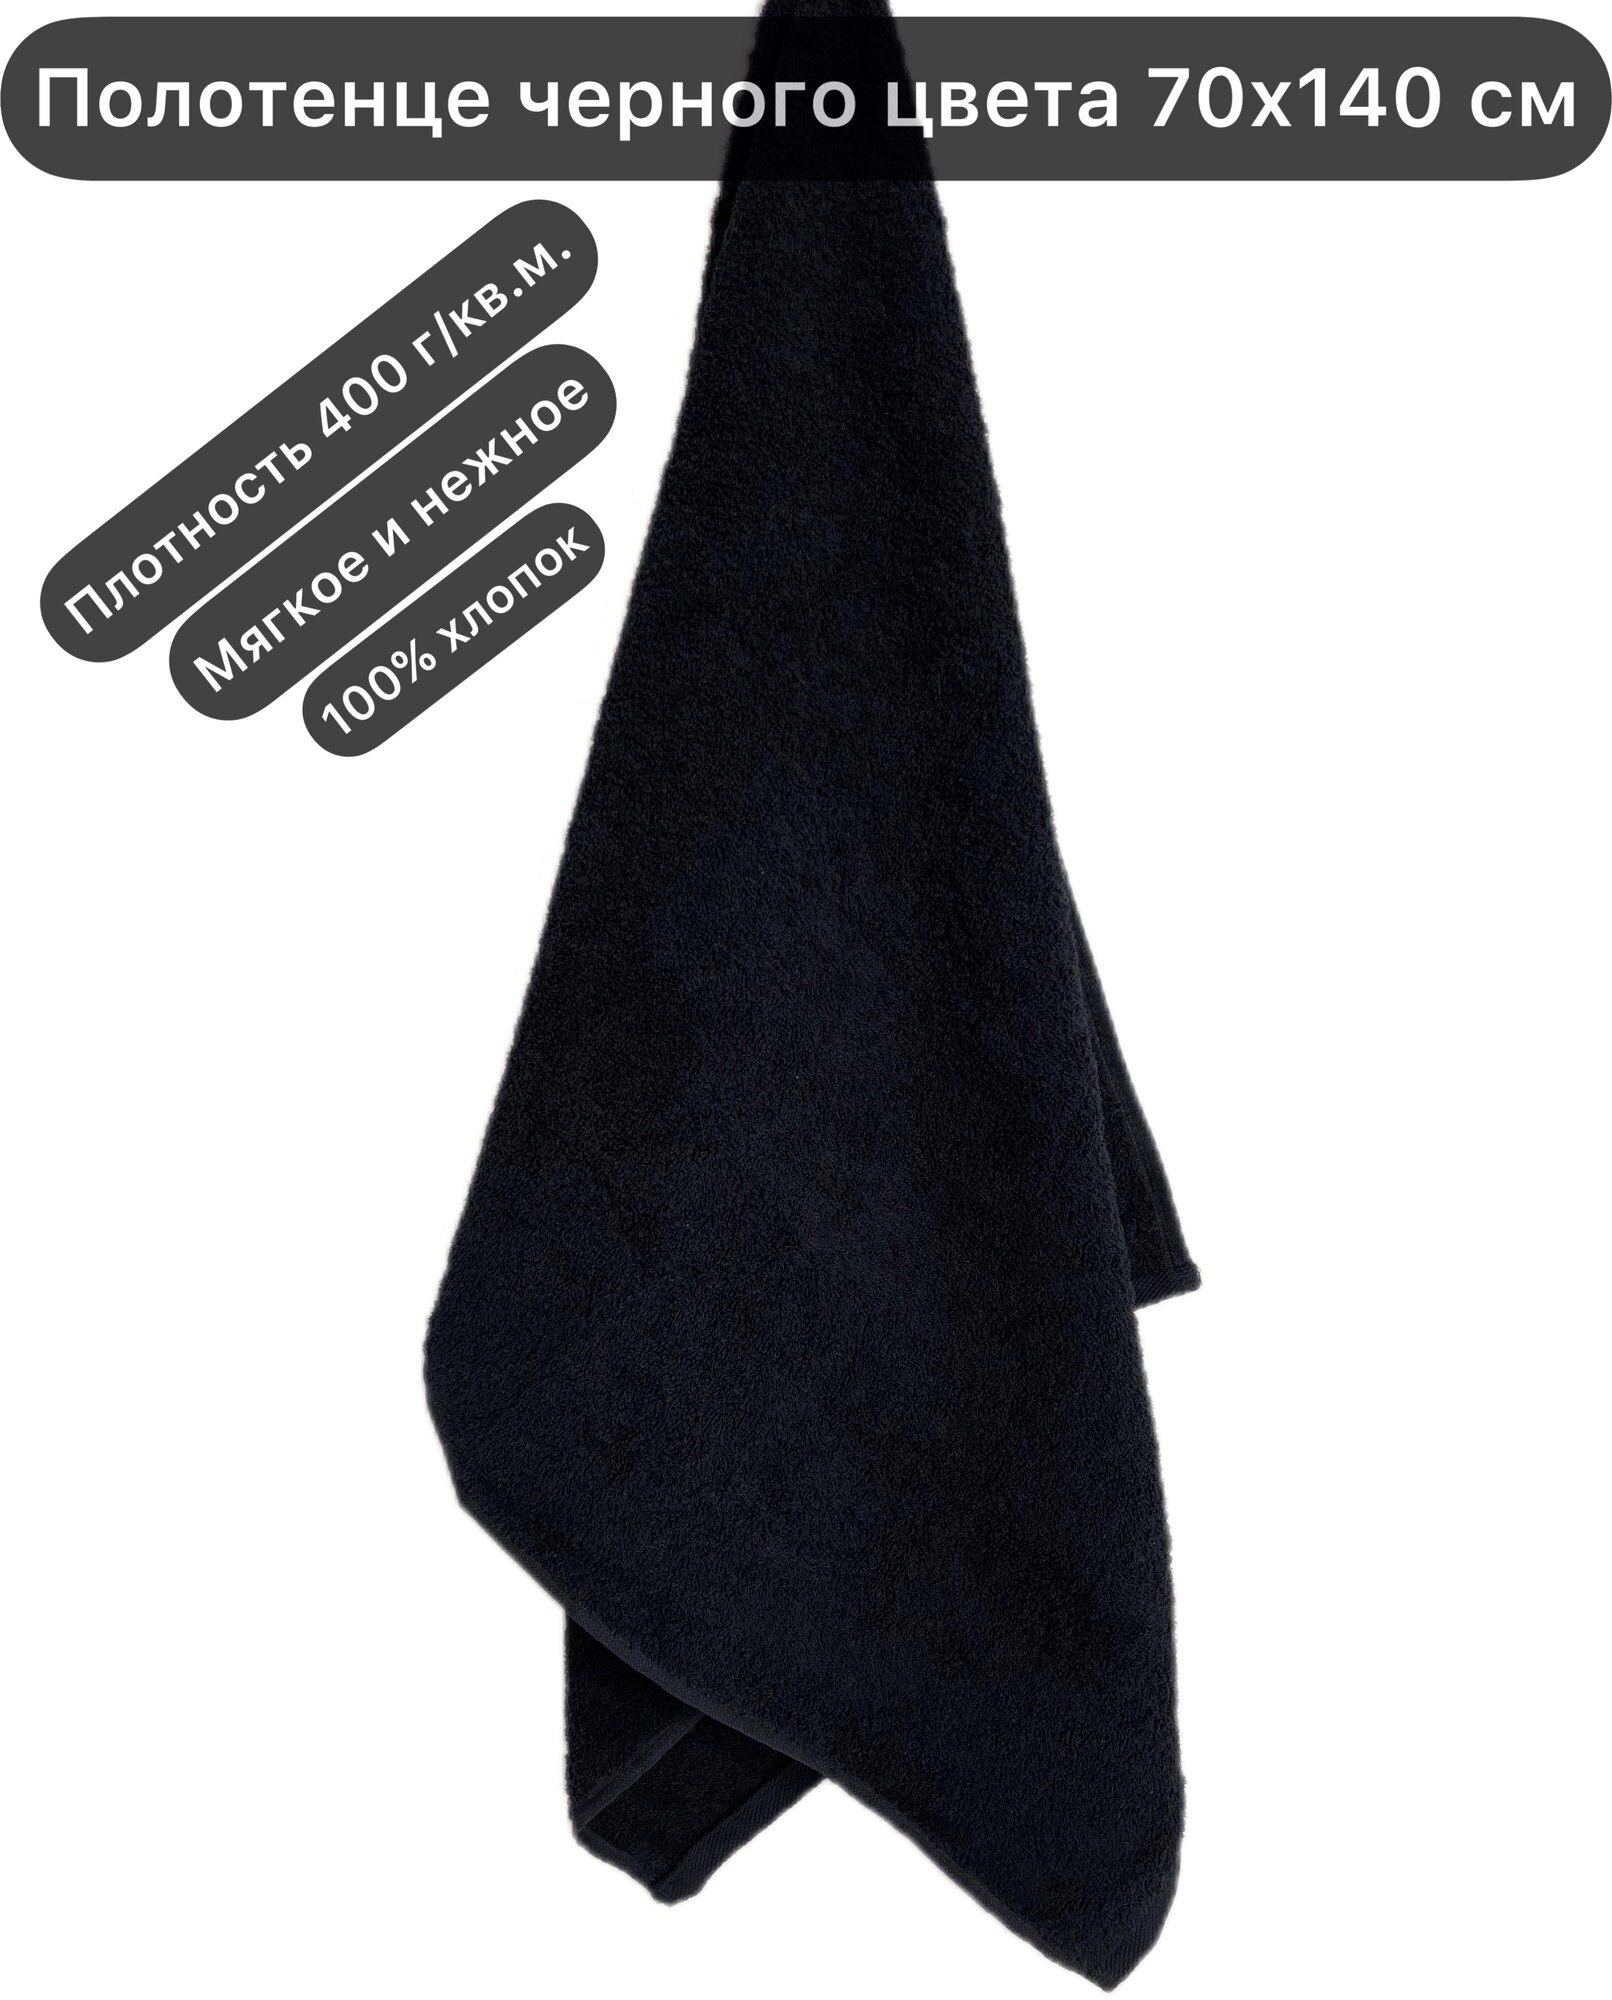 Полотенце махровое черное 70х140 см банное 400 г/кв.м, Вышневолоцкий текстиль, 100% хлопок - фотография № 1